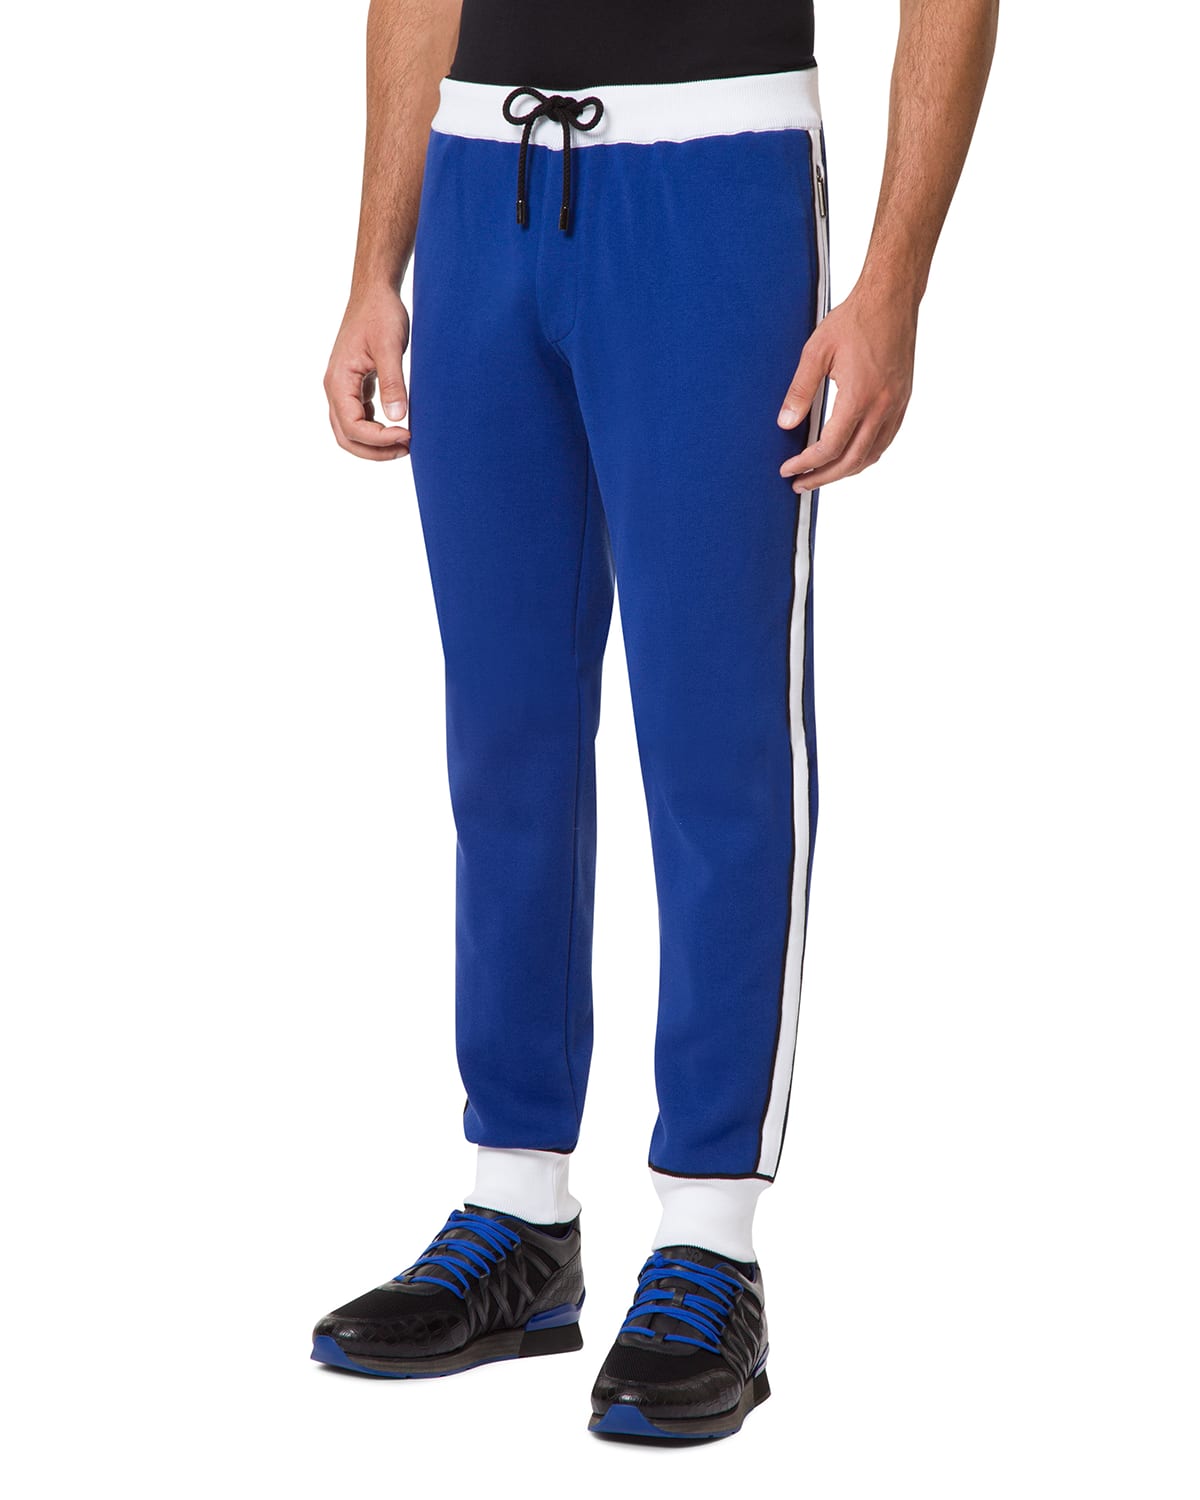 Men's Colorblock Jogging Suit Pants